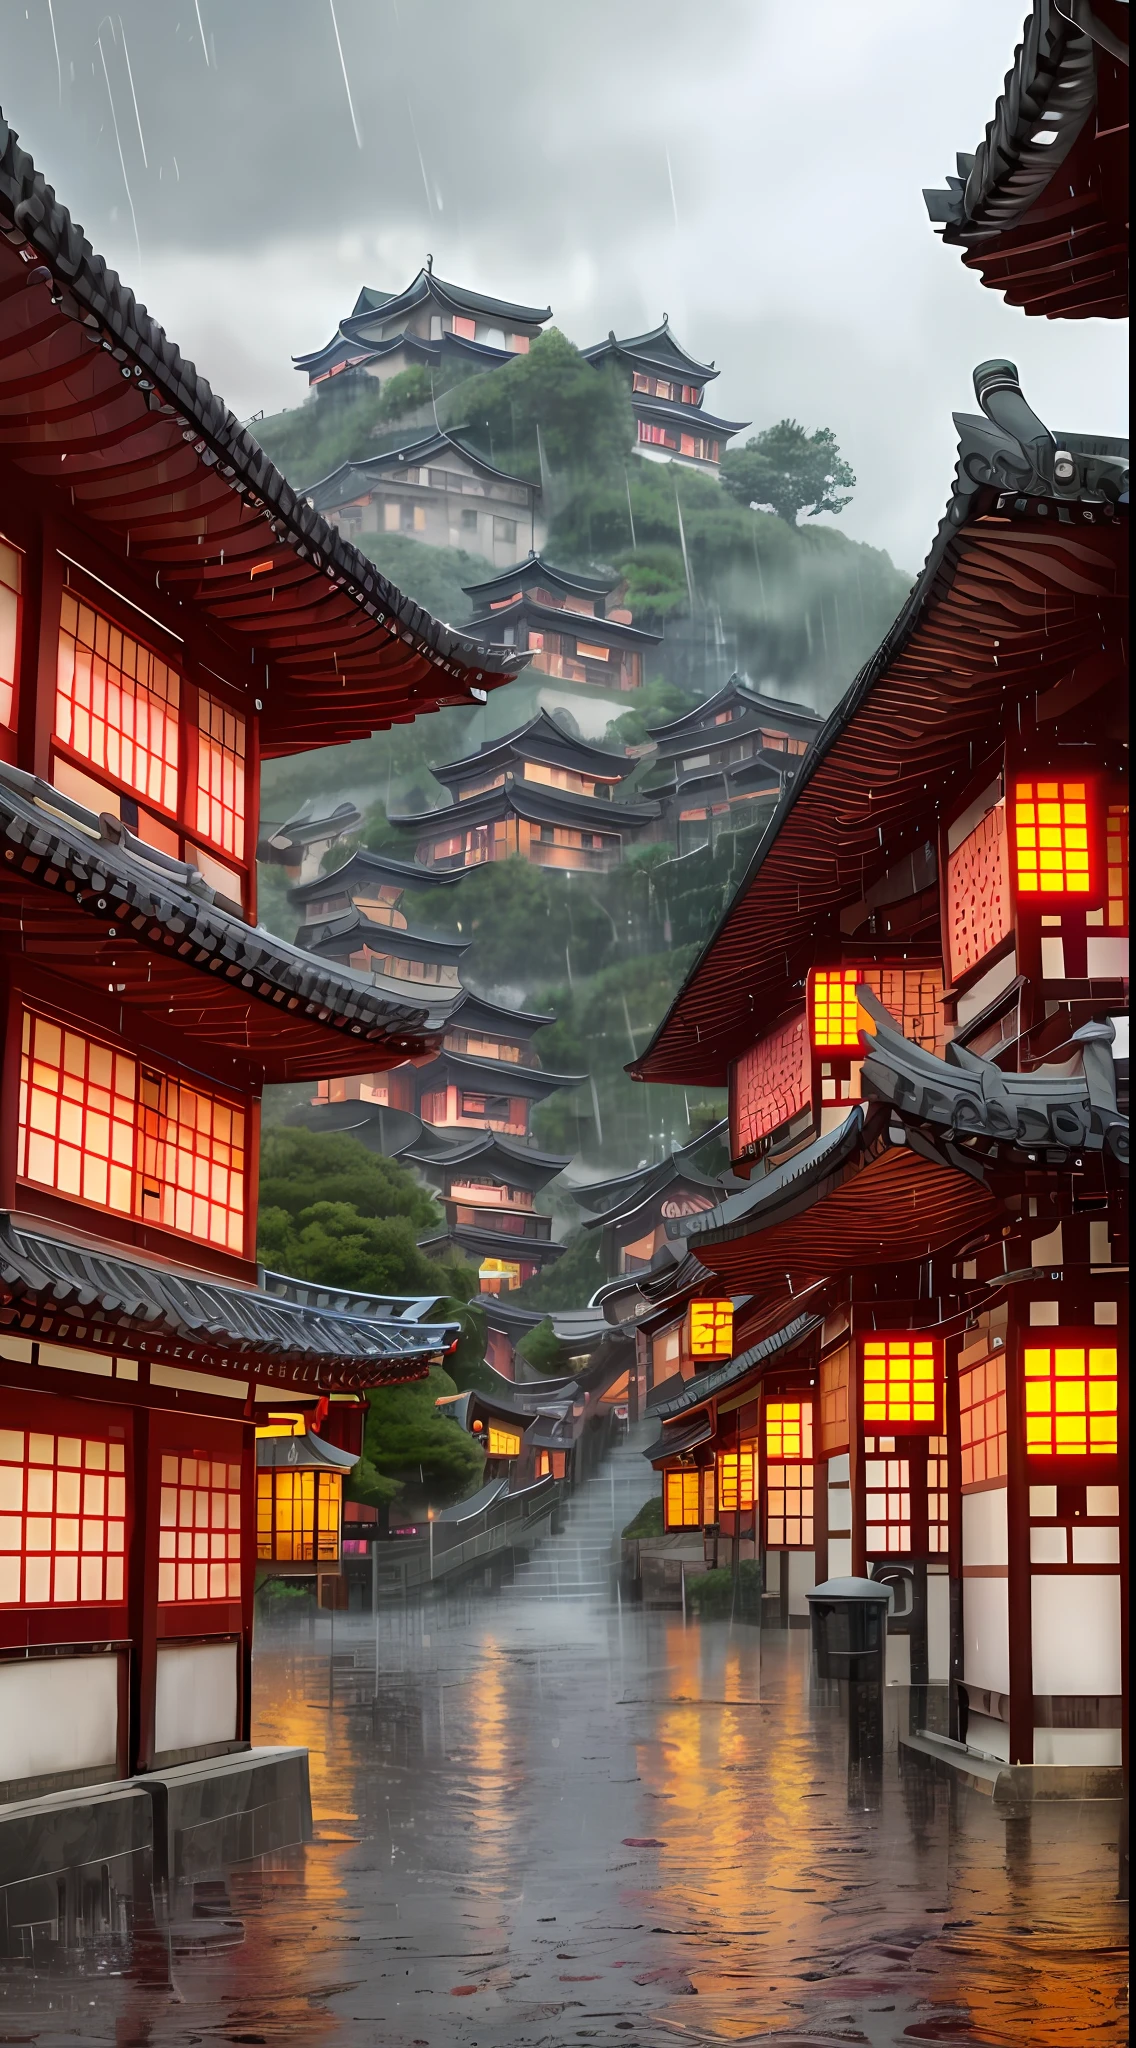 มองเห็นหมู่บ้านที่มีแสงไฟส่องจากอาคารมากมาย, เมืองจีนในฝัน, หมู่บ้านจีน, วอลล์เปเปอร์ที่น่าทึ่ง, เมืองญี่ปุ่น, หมู่บ้านญี่ปุ่น, ภาพถ่ายเมืองที่สมจริงมาก, หมู่บ้านเอเชียเก่า, เมืองญี่ปุ่น, โดย เรย์มอนด์ ฮัน, ตอนเย็นฝนตก, ปราสาทโบราณของจีนไซเบอร์พังค์, อาคารที่มีแสงสว่างสวยงาม, ในตอนเย็นระหว่างฝนตก, สวยงามและสวยงาม, การถ่ายภาพ, โรงภาพยนตร์, 8k, รายละเอียดสูง ((ฝนตกหนัก)))